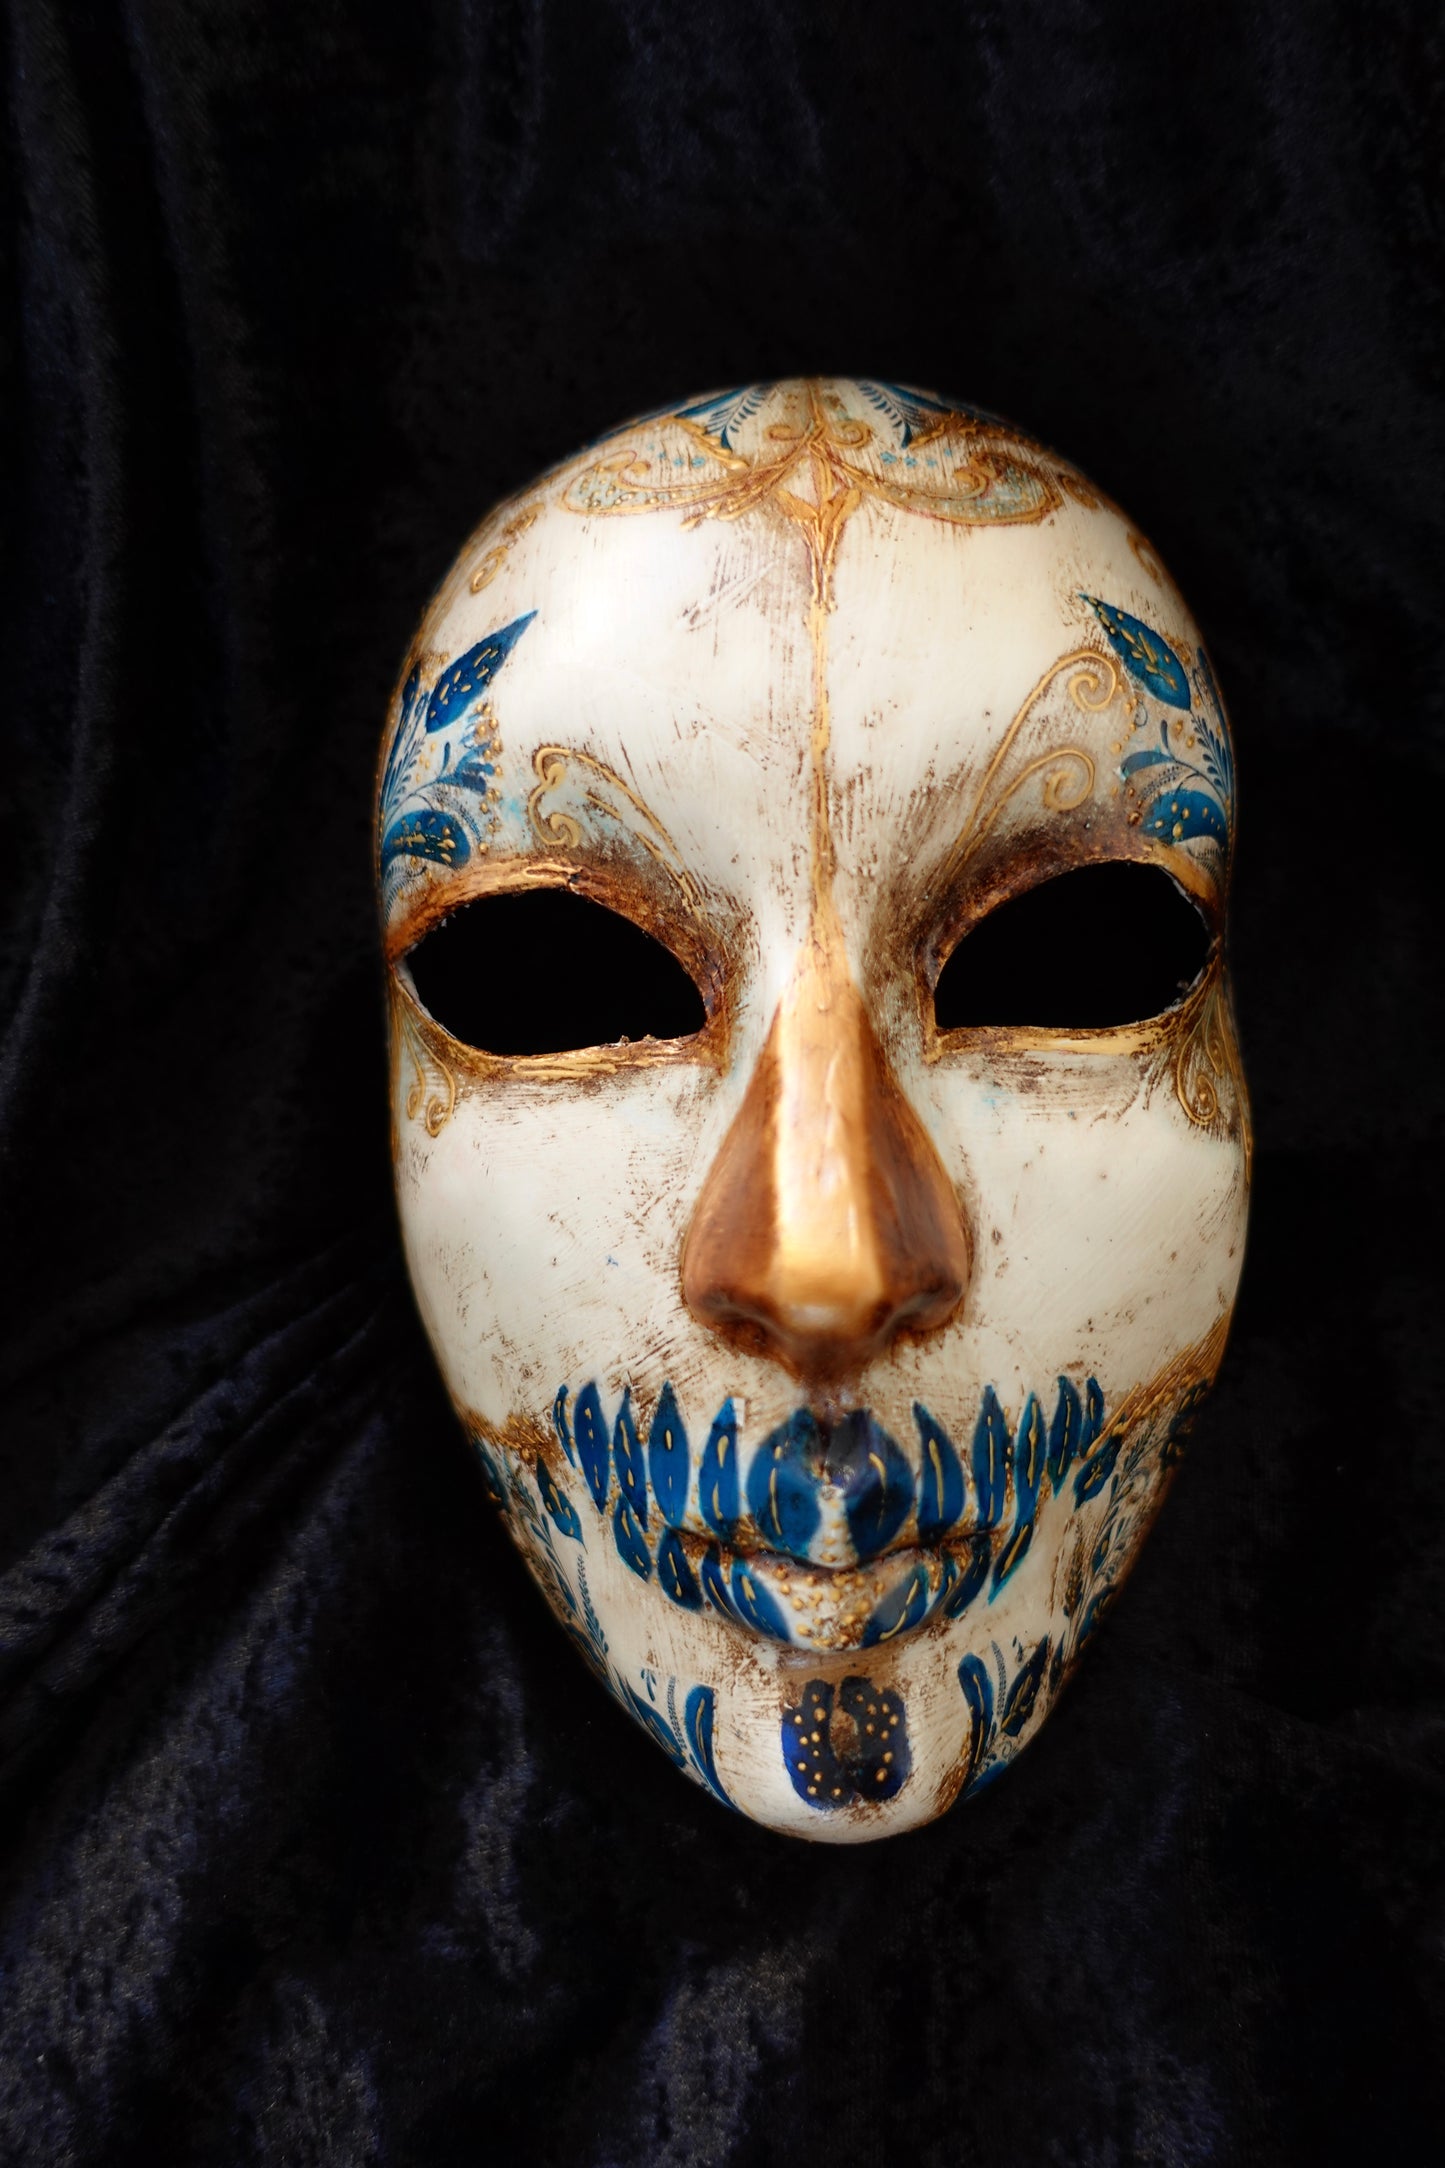 Maschera Día de los muertos dal modello originale del giorno della morte in Messico